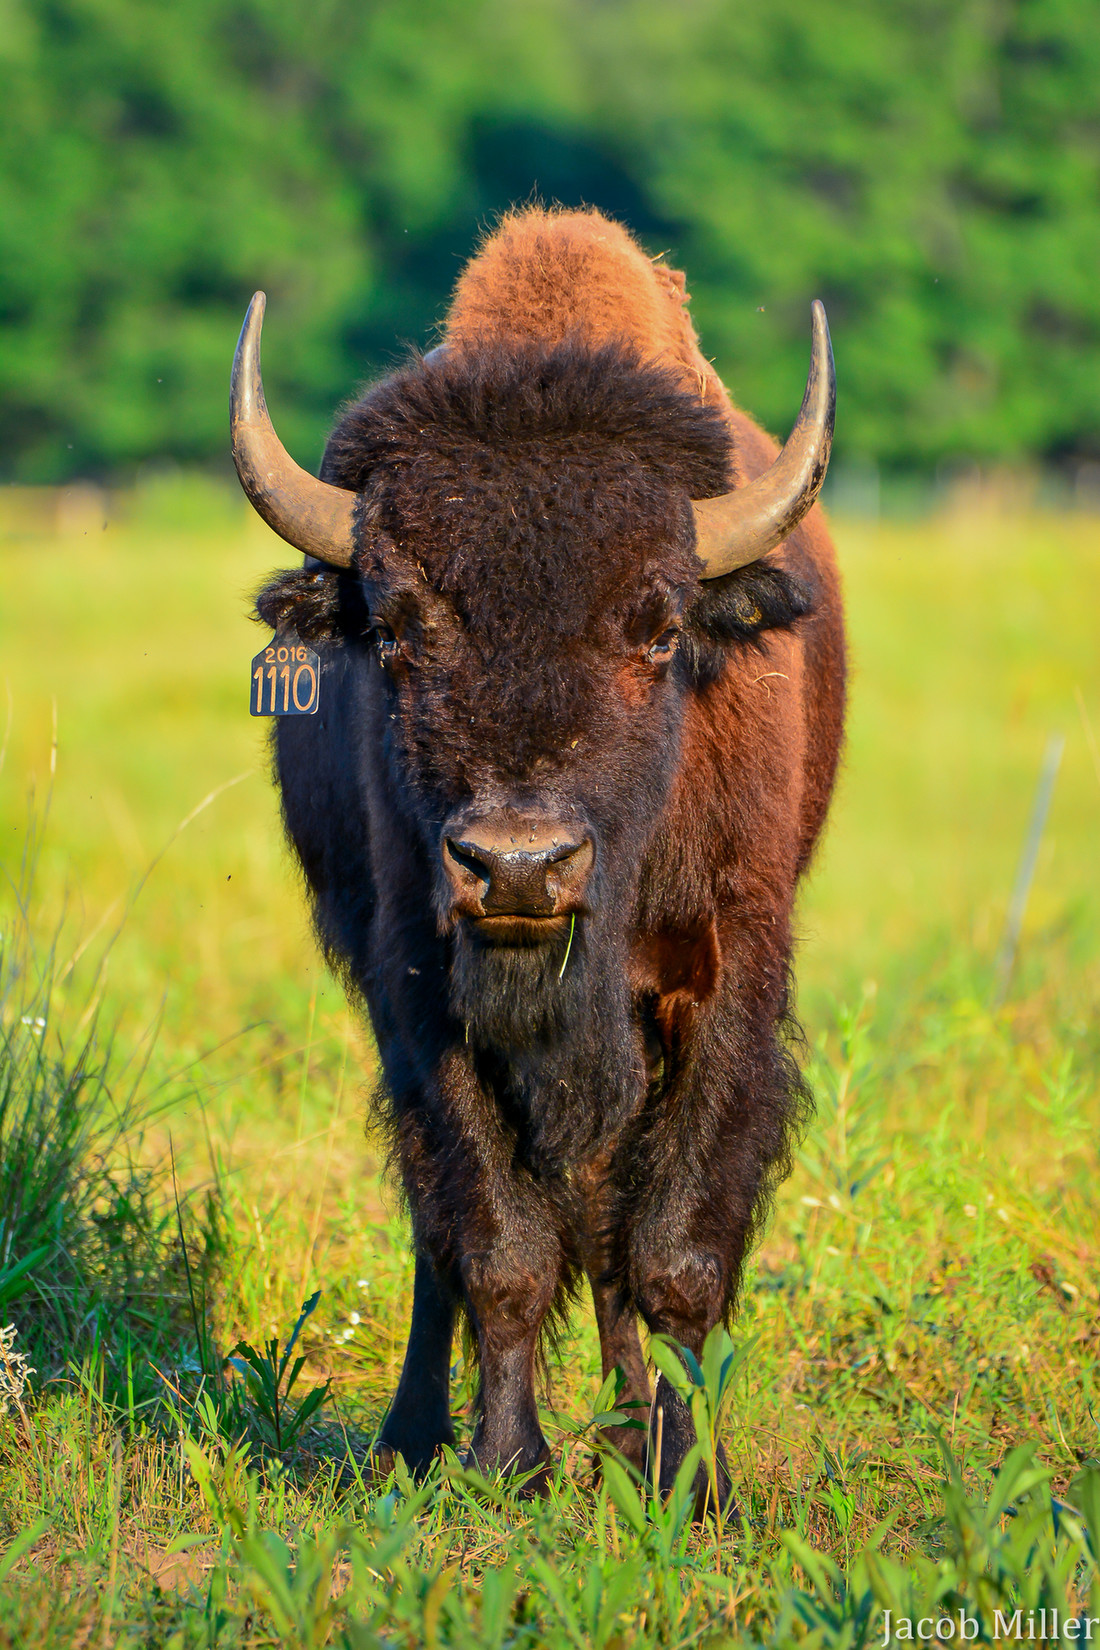 Bringing back the bison